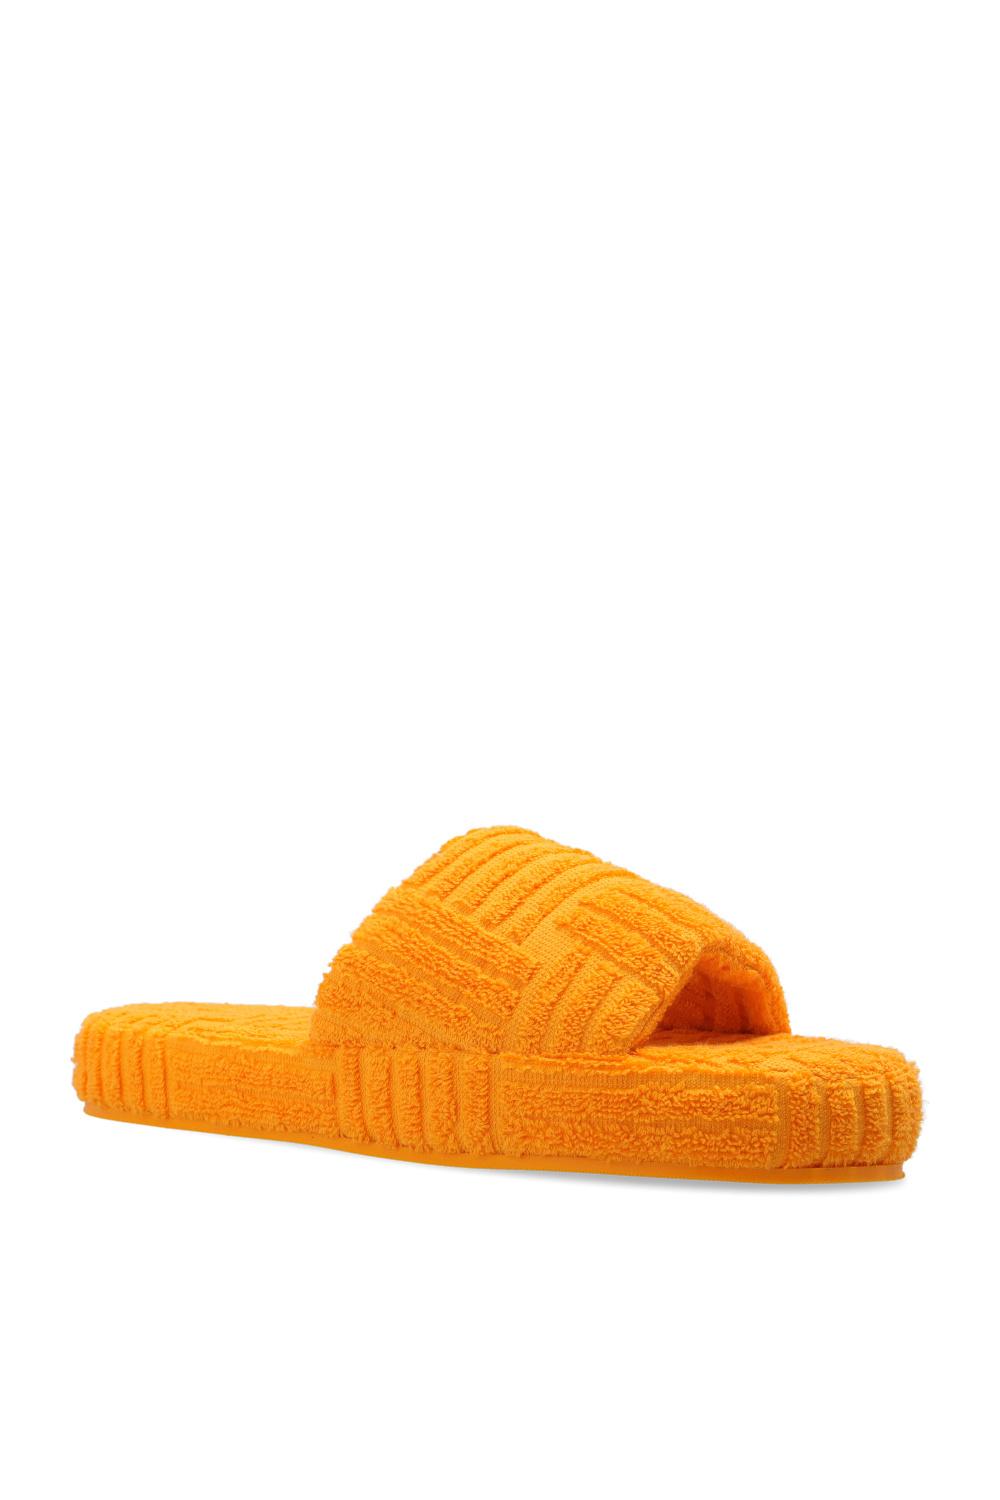 Bottega Veneta Resort Sponge Sandals for Men Mens Shoes Slip-on shoes Slippers 